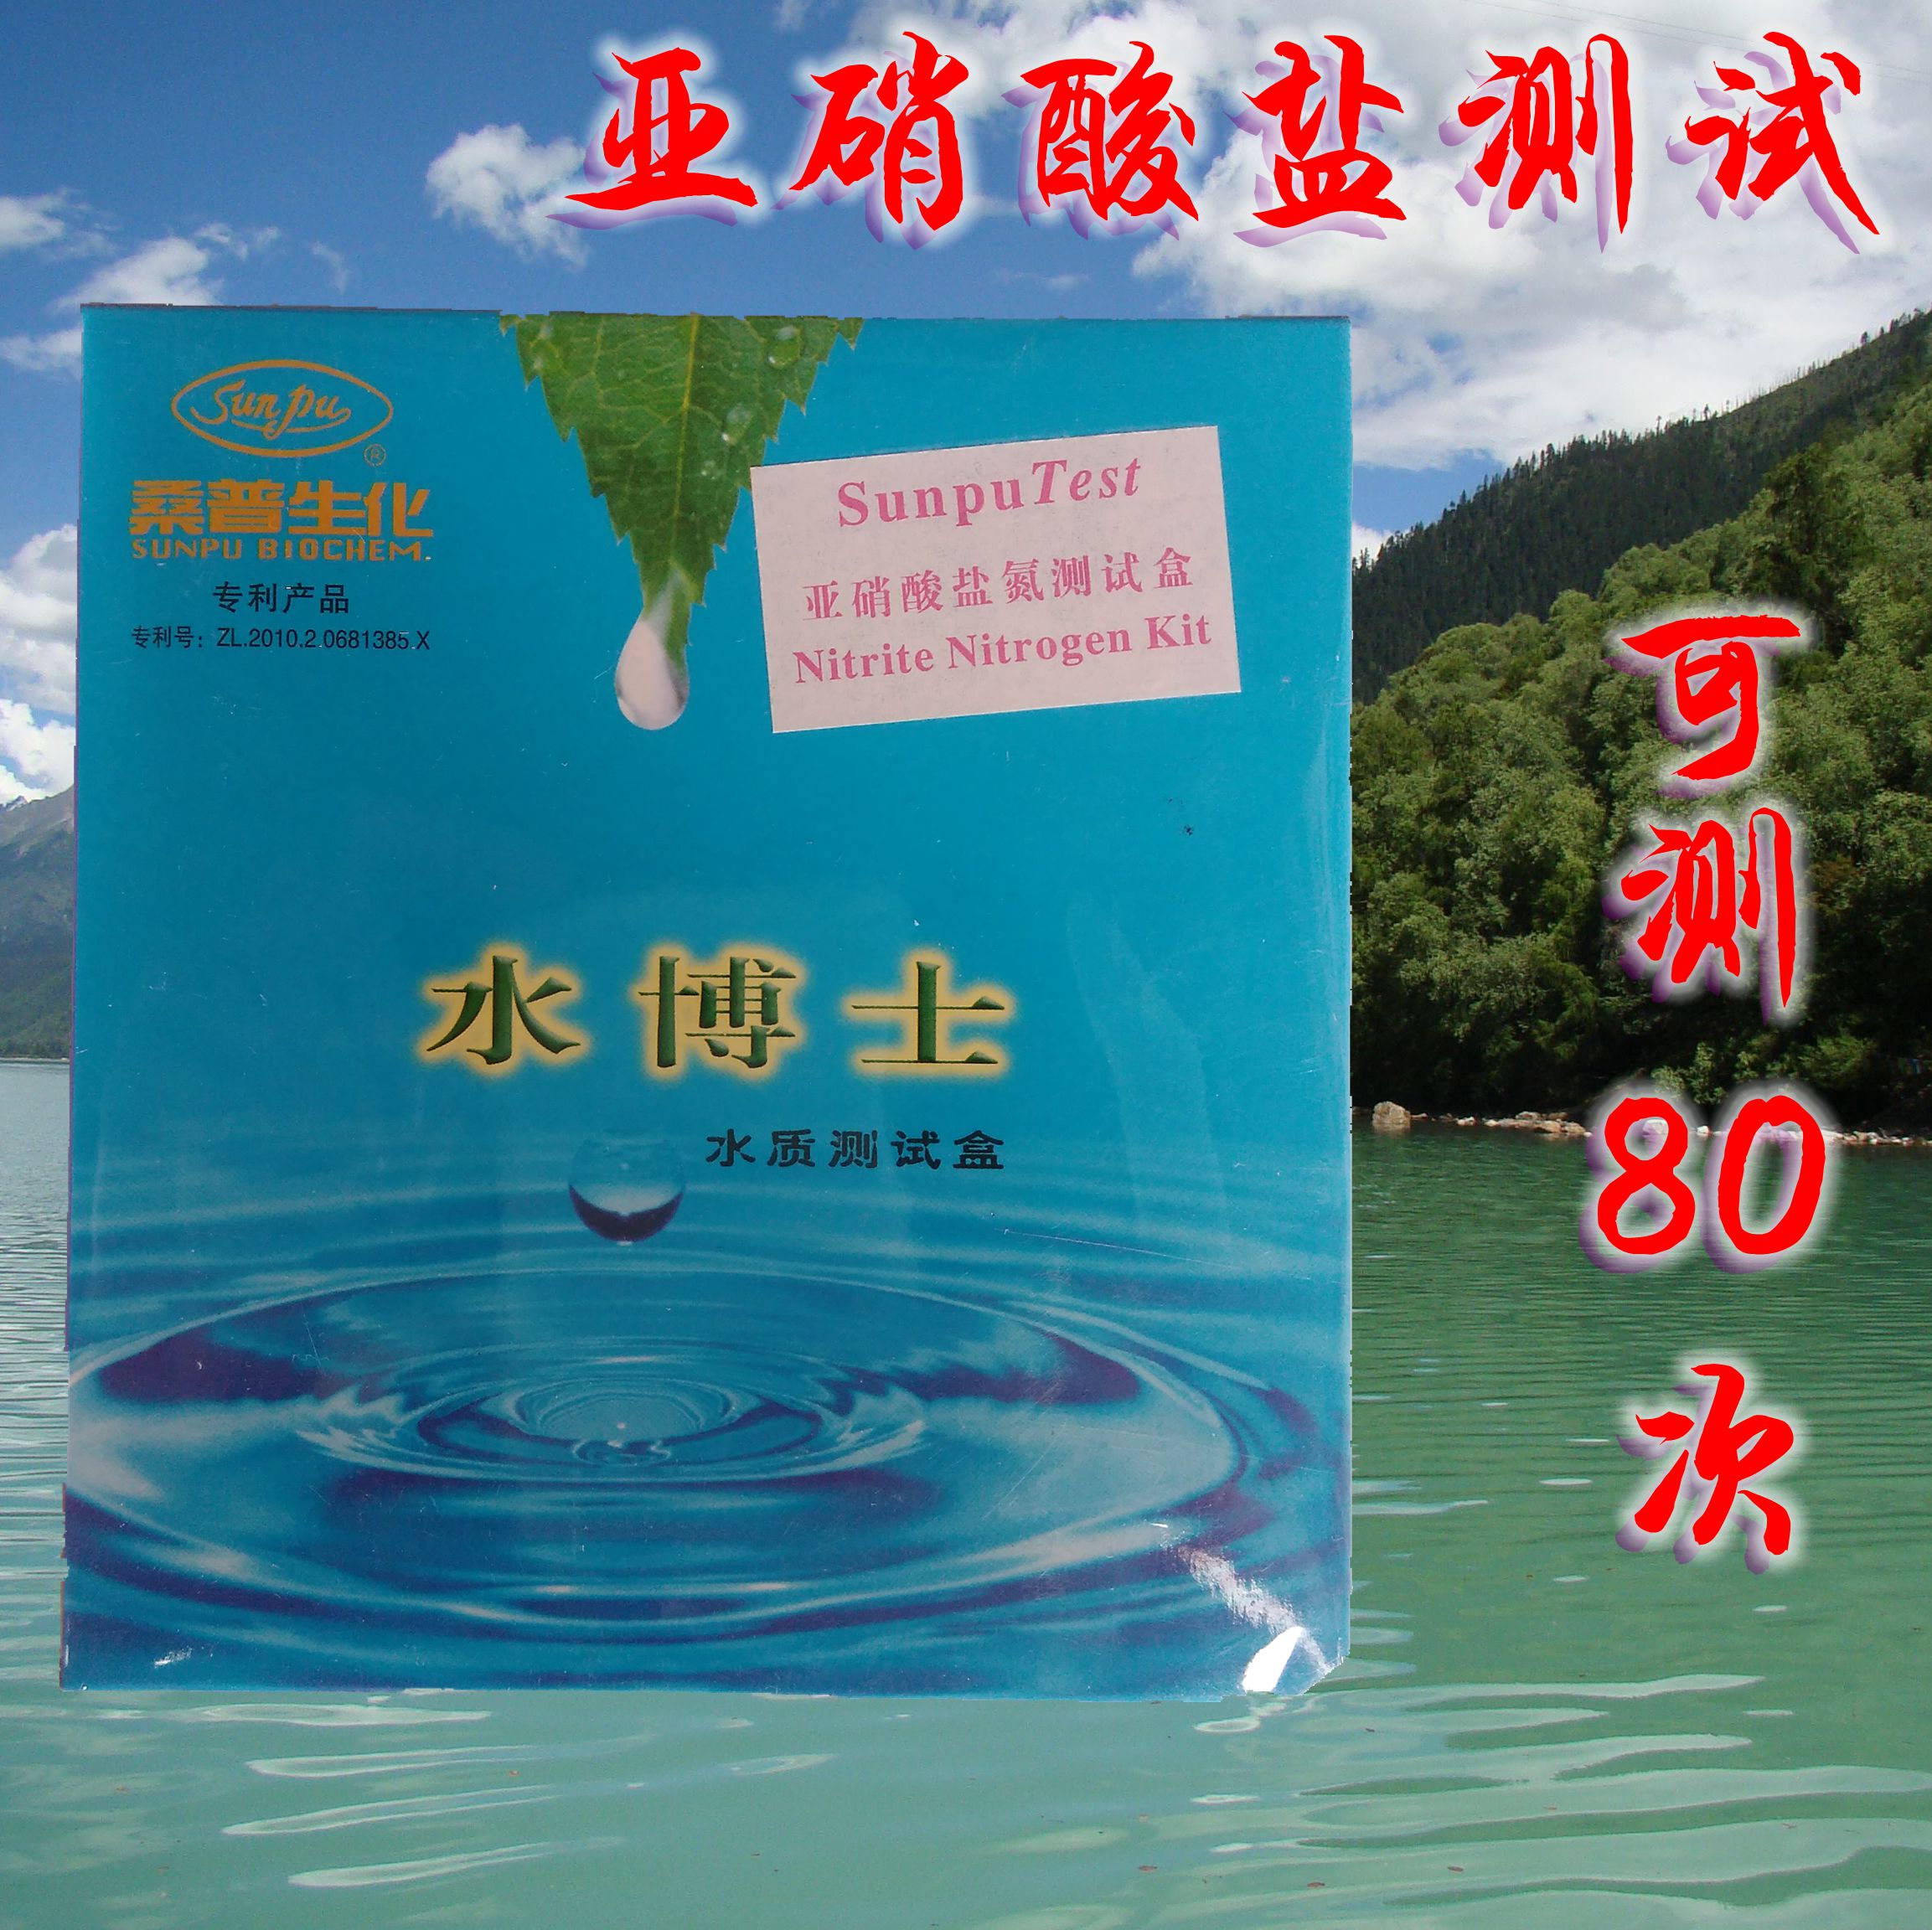 桑普生化北京桑普水博士水质测试盒亚硝酸盐试剂测试剂盒鱼虾养殖